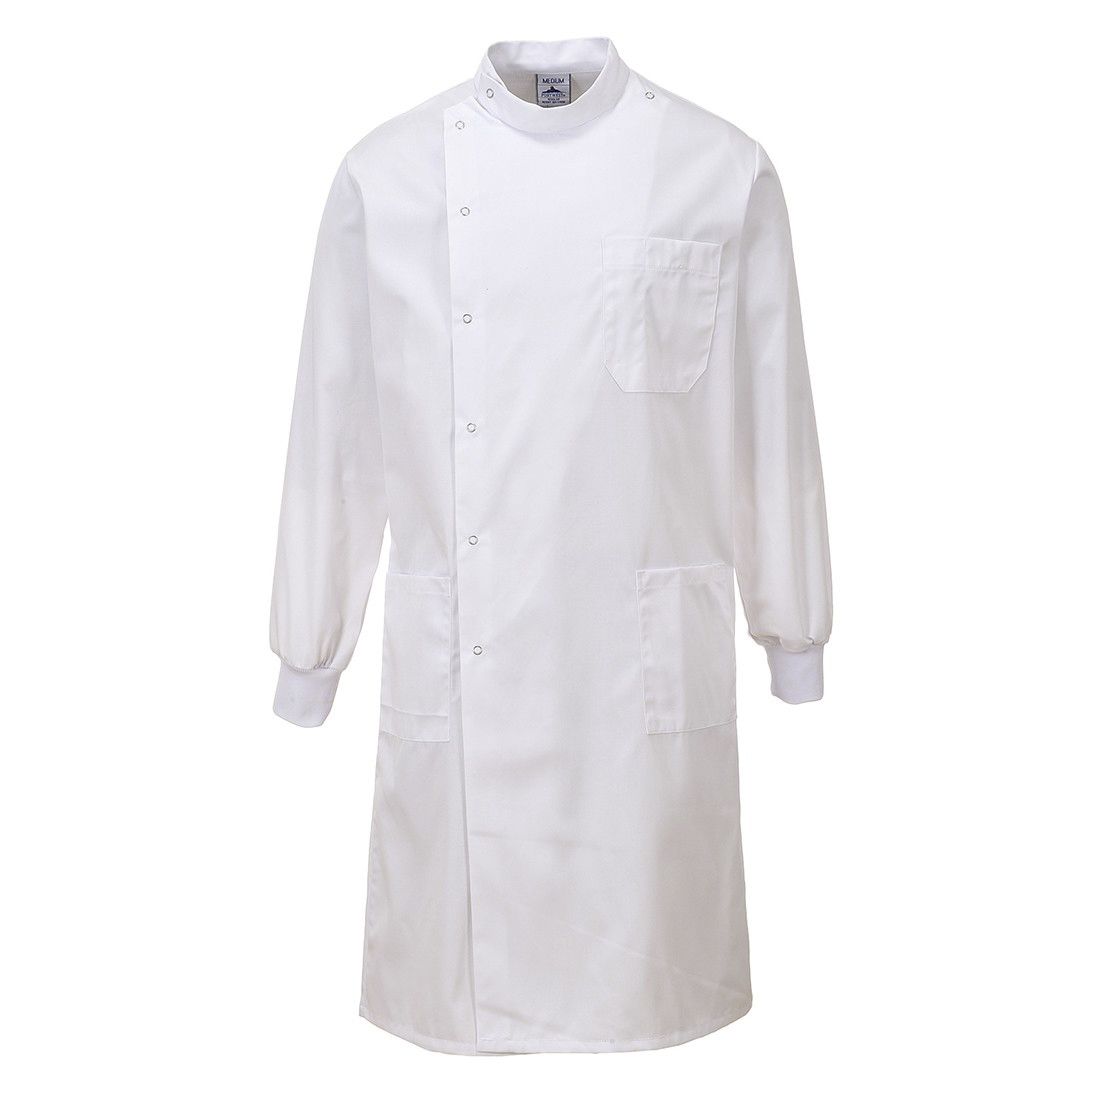 RS PRO White Men Reusable Lab Coat, XL